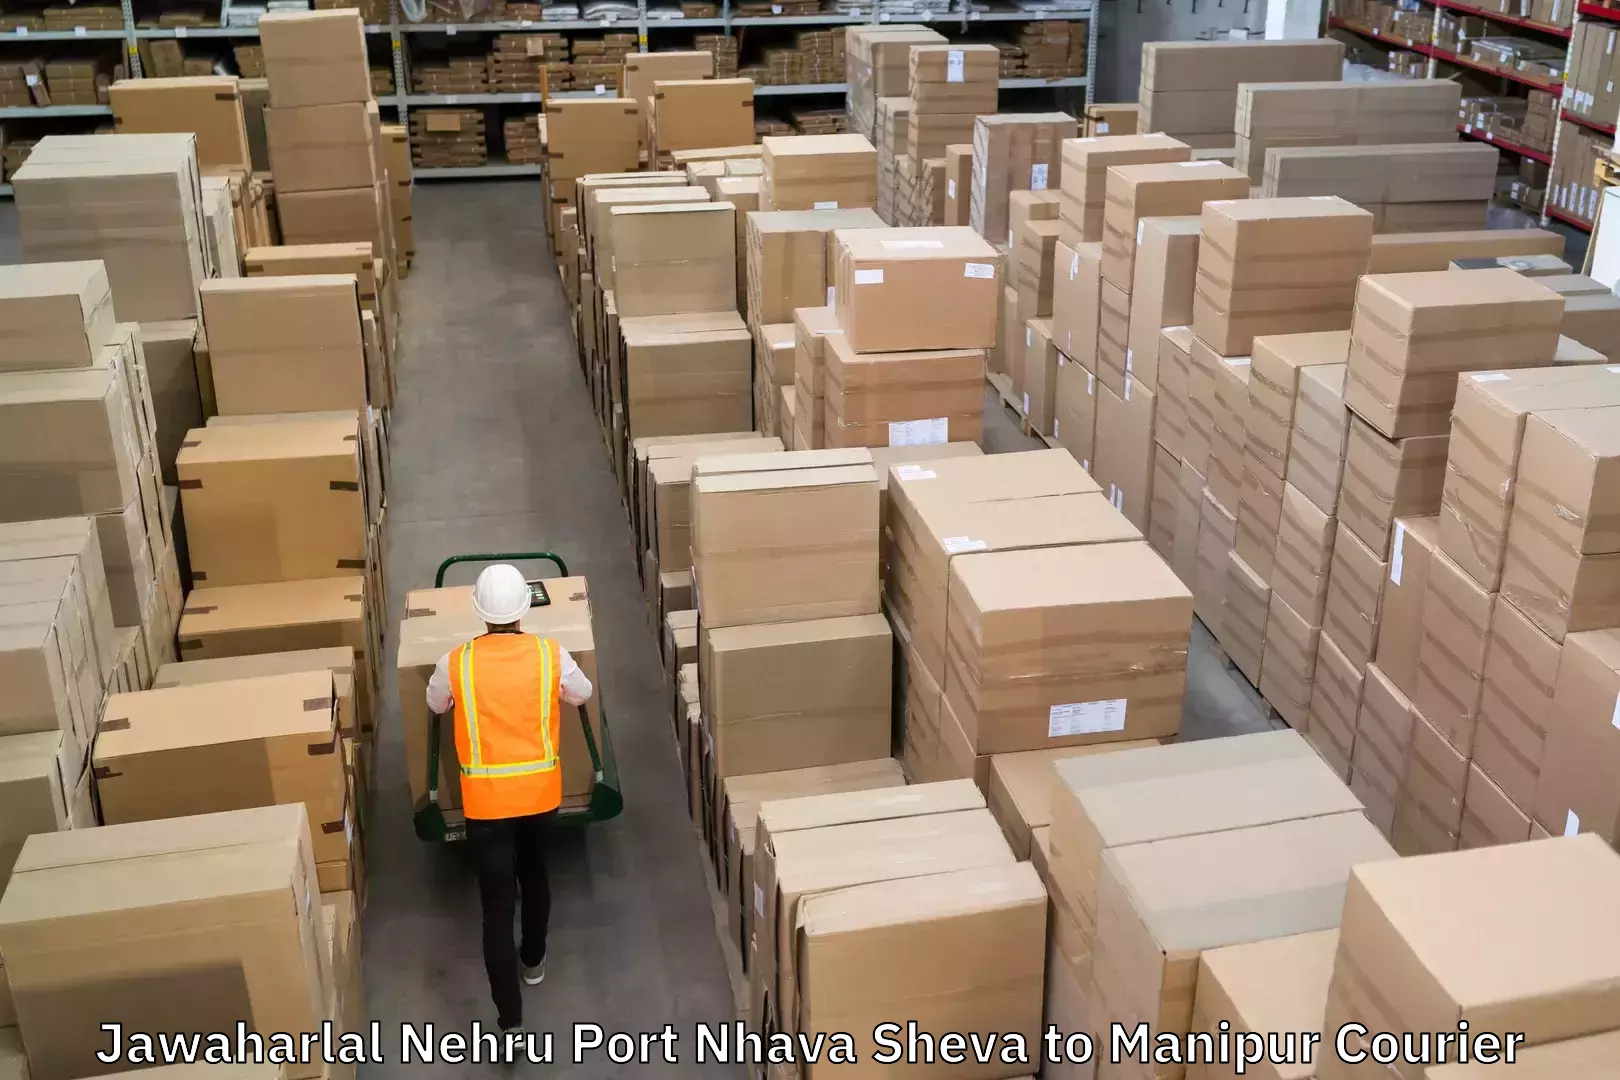 Customer-oriented courier services Jawaharlal Nehru Port Nhava Sheva to Chandel